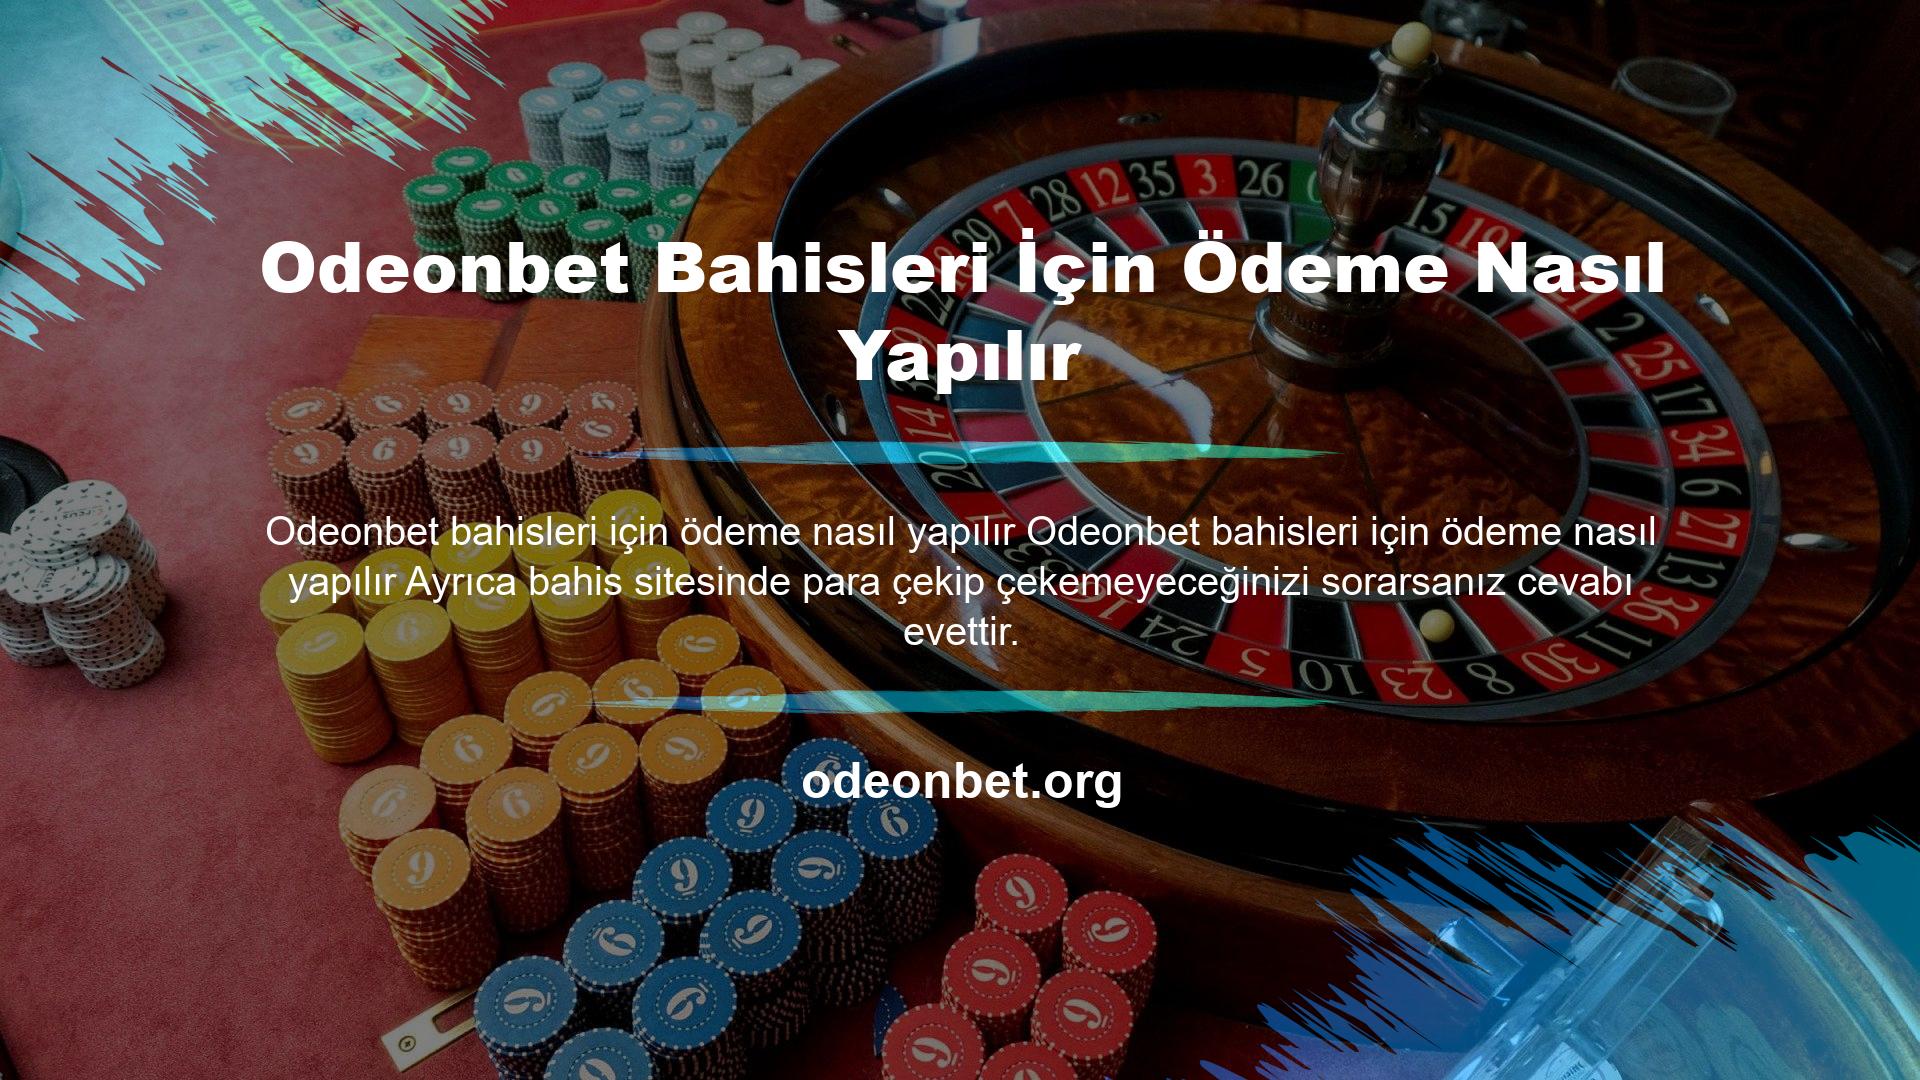 Türkiye pazarında yer alması ve Türkiye pazarında yabancı casino sitesi olması nedeniyle erişim sorunu yaşayan sitelerden biridir